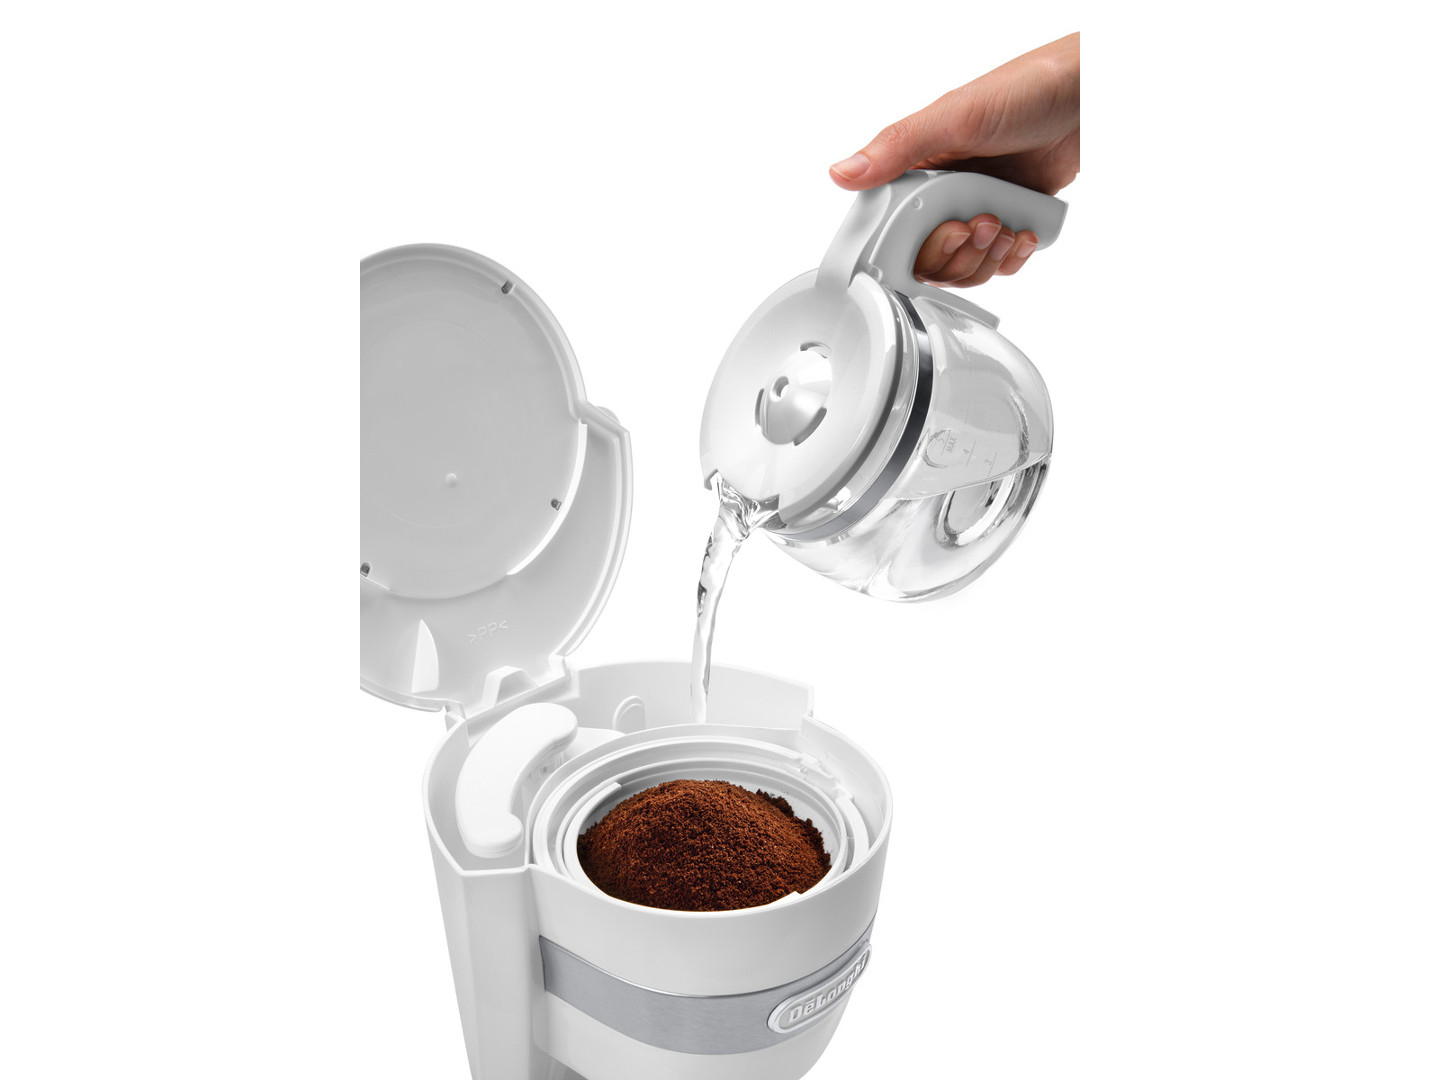 De’Longhi DeLonghi Autentica ICM14011.W macchina per caffè Macchina da con filtro 0,65 L Automatica